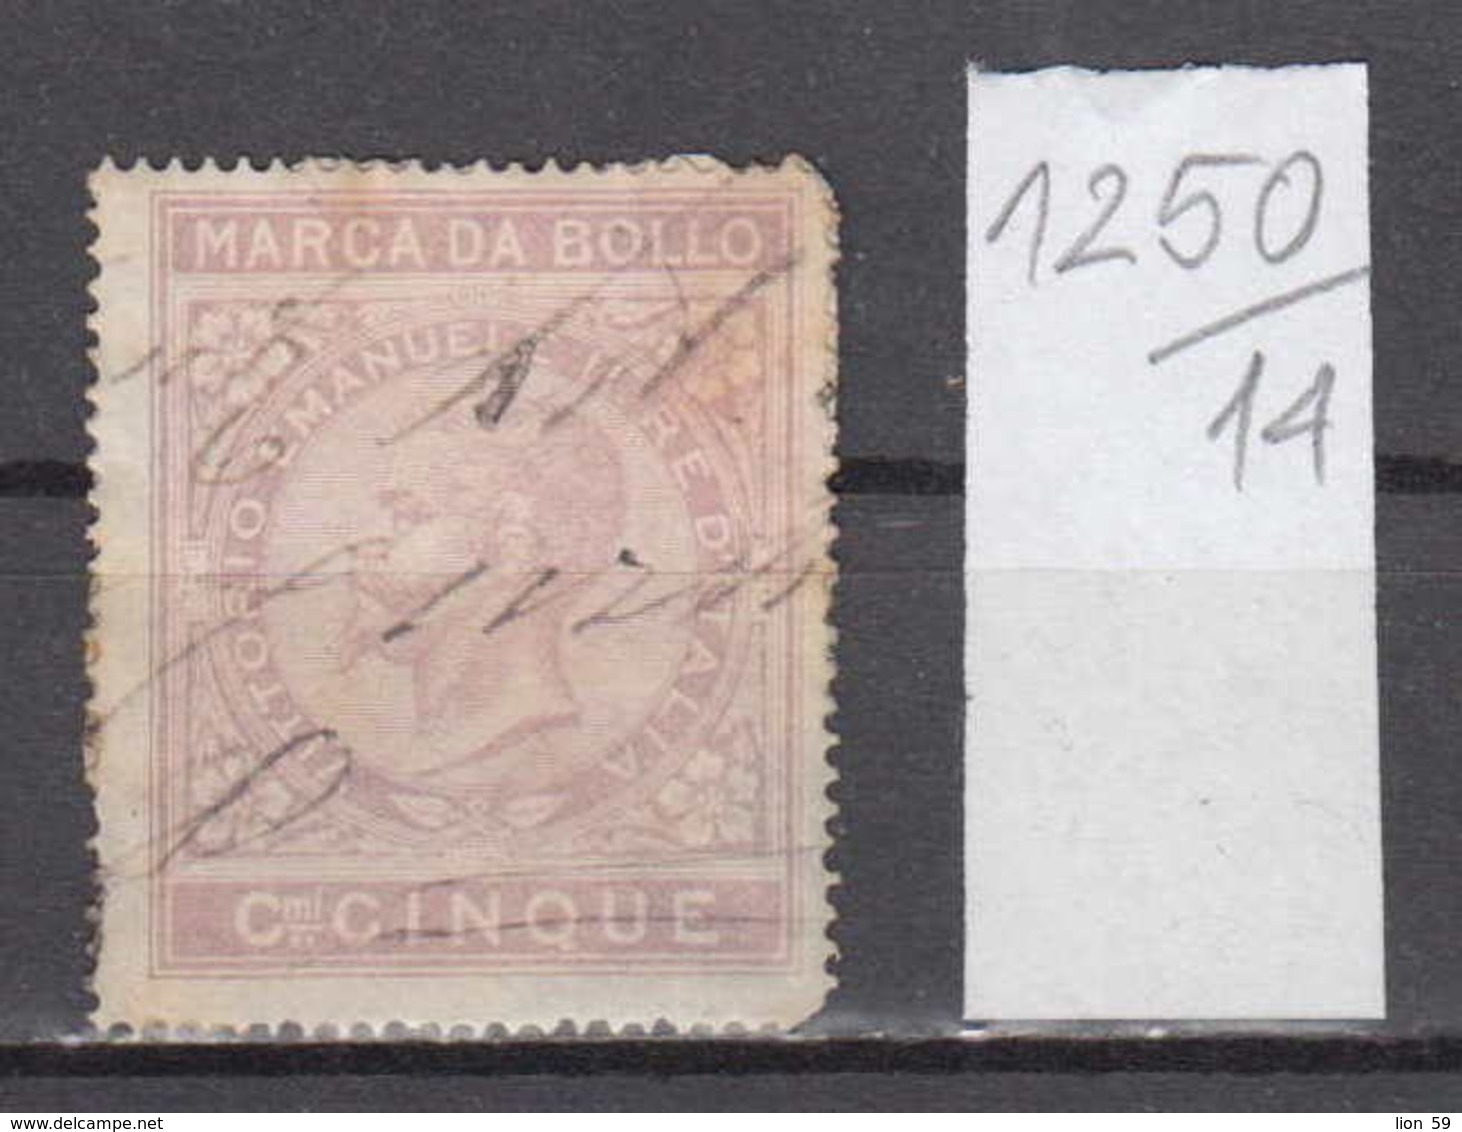 14K1250 / MARCA DA BOLLO , Cmi CINQUE , Vittorio Emanuele II Revenue Fiscaux Steuermarken Fiscal , Italia Italy - Revenue Stamps